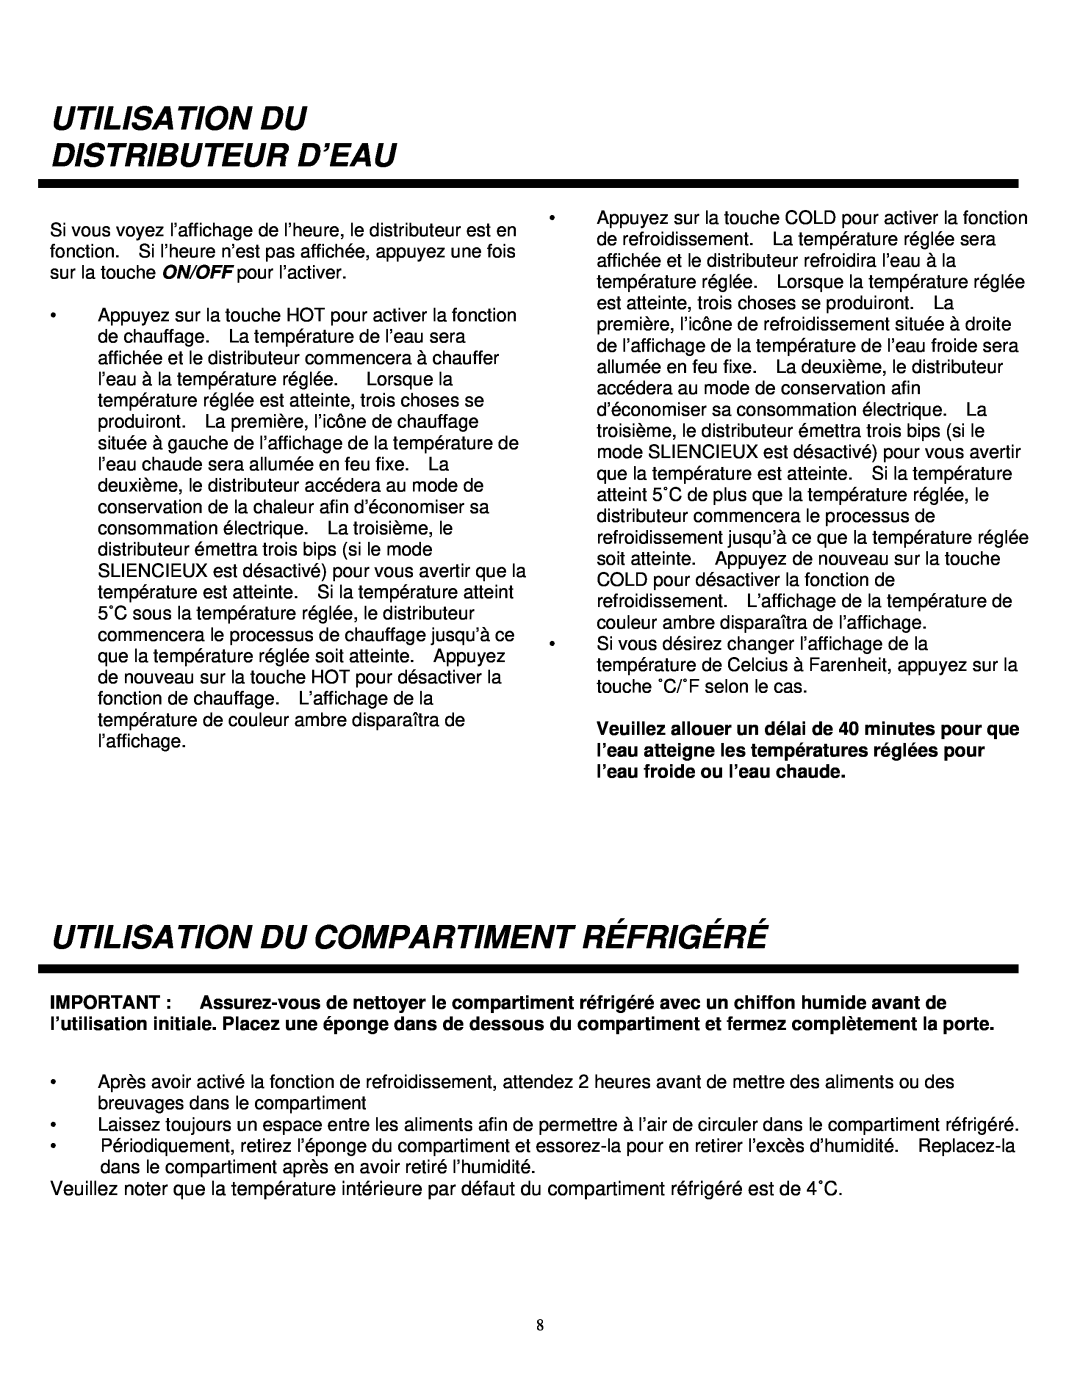 Sylvania SE80092 instruction manual Utilisation Du Distributeur D’Eau, Utilisation Du Compartiment Réfrigéré 